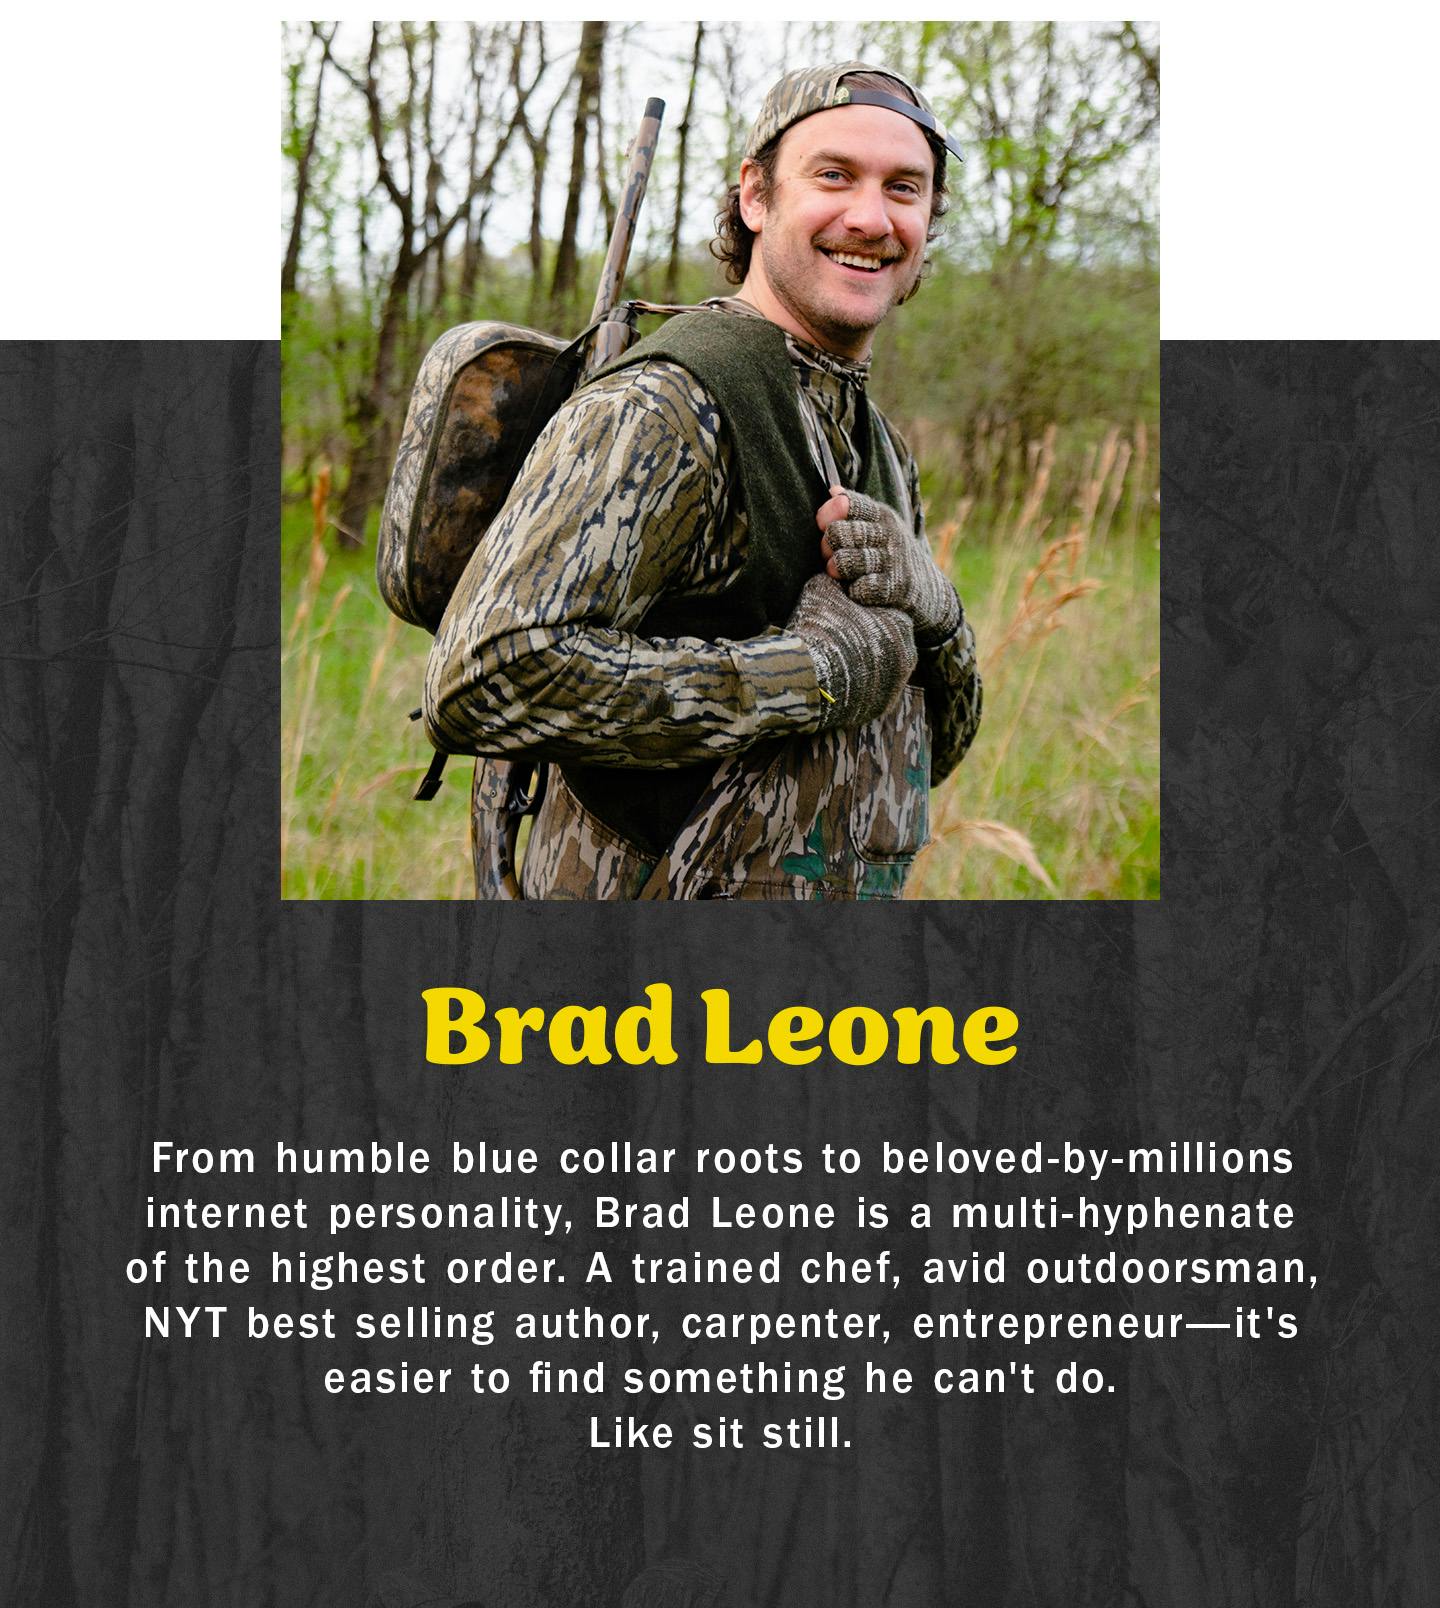 Brad Leone Headshot and Bio